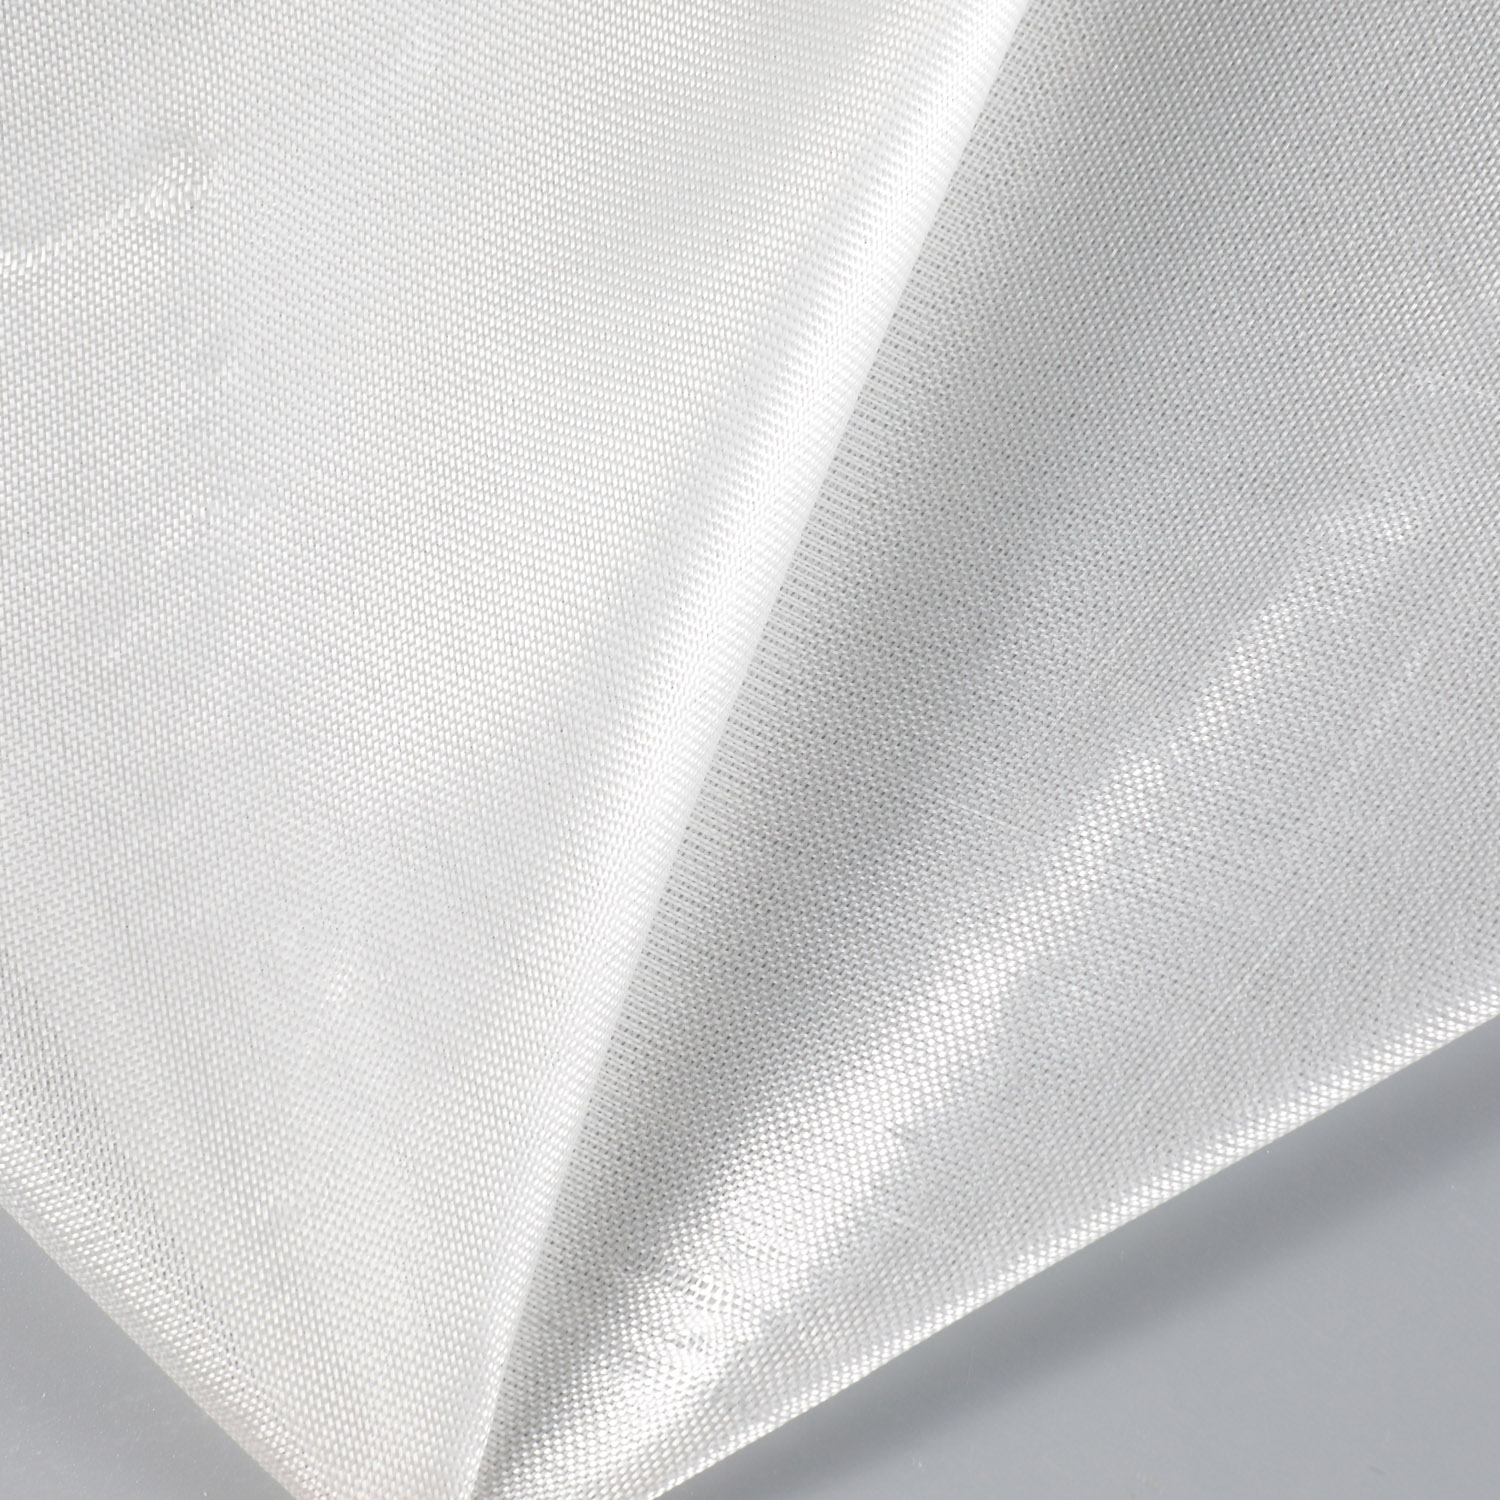 0.53 oz Fiberglass Cloth (EW25)